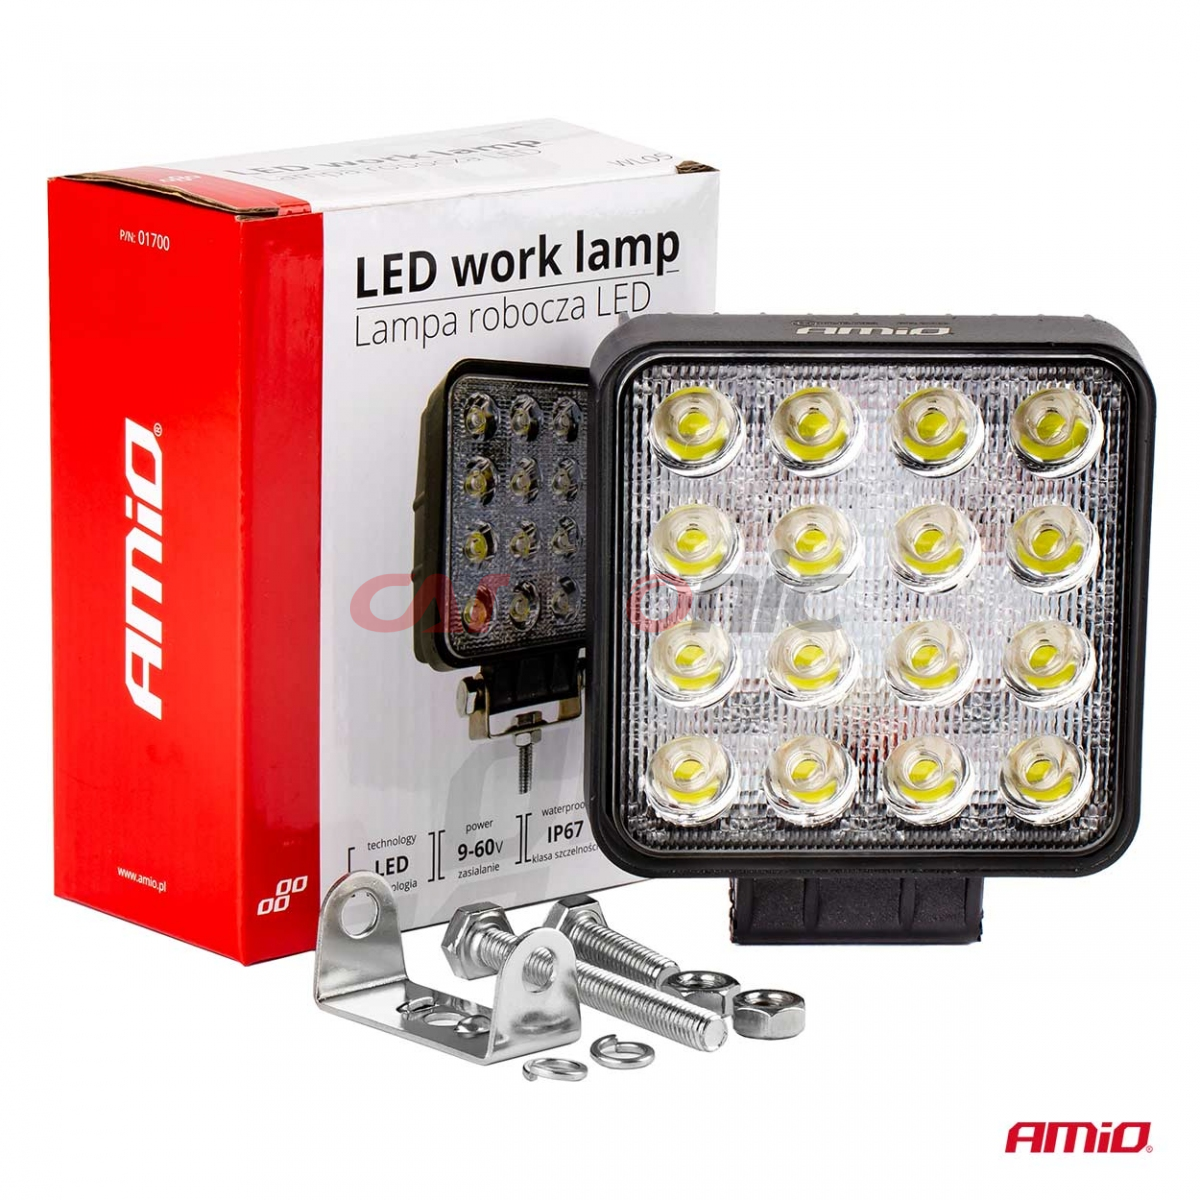 Lampa robocza halogen LED szperacz AWL05 16 LED AMIO-01700